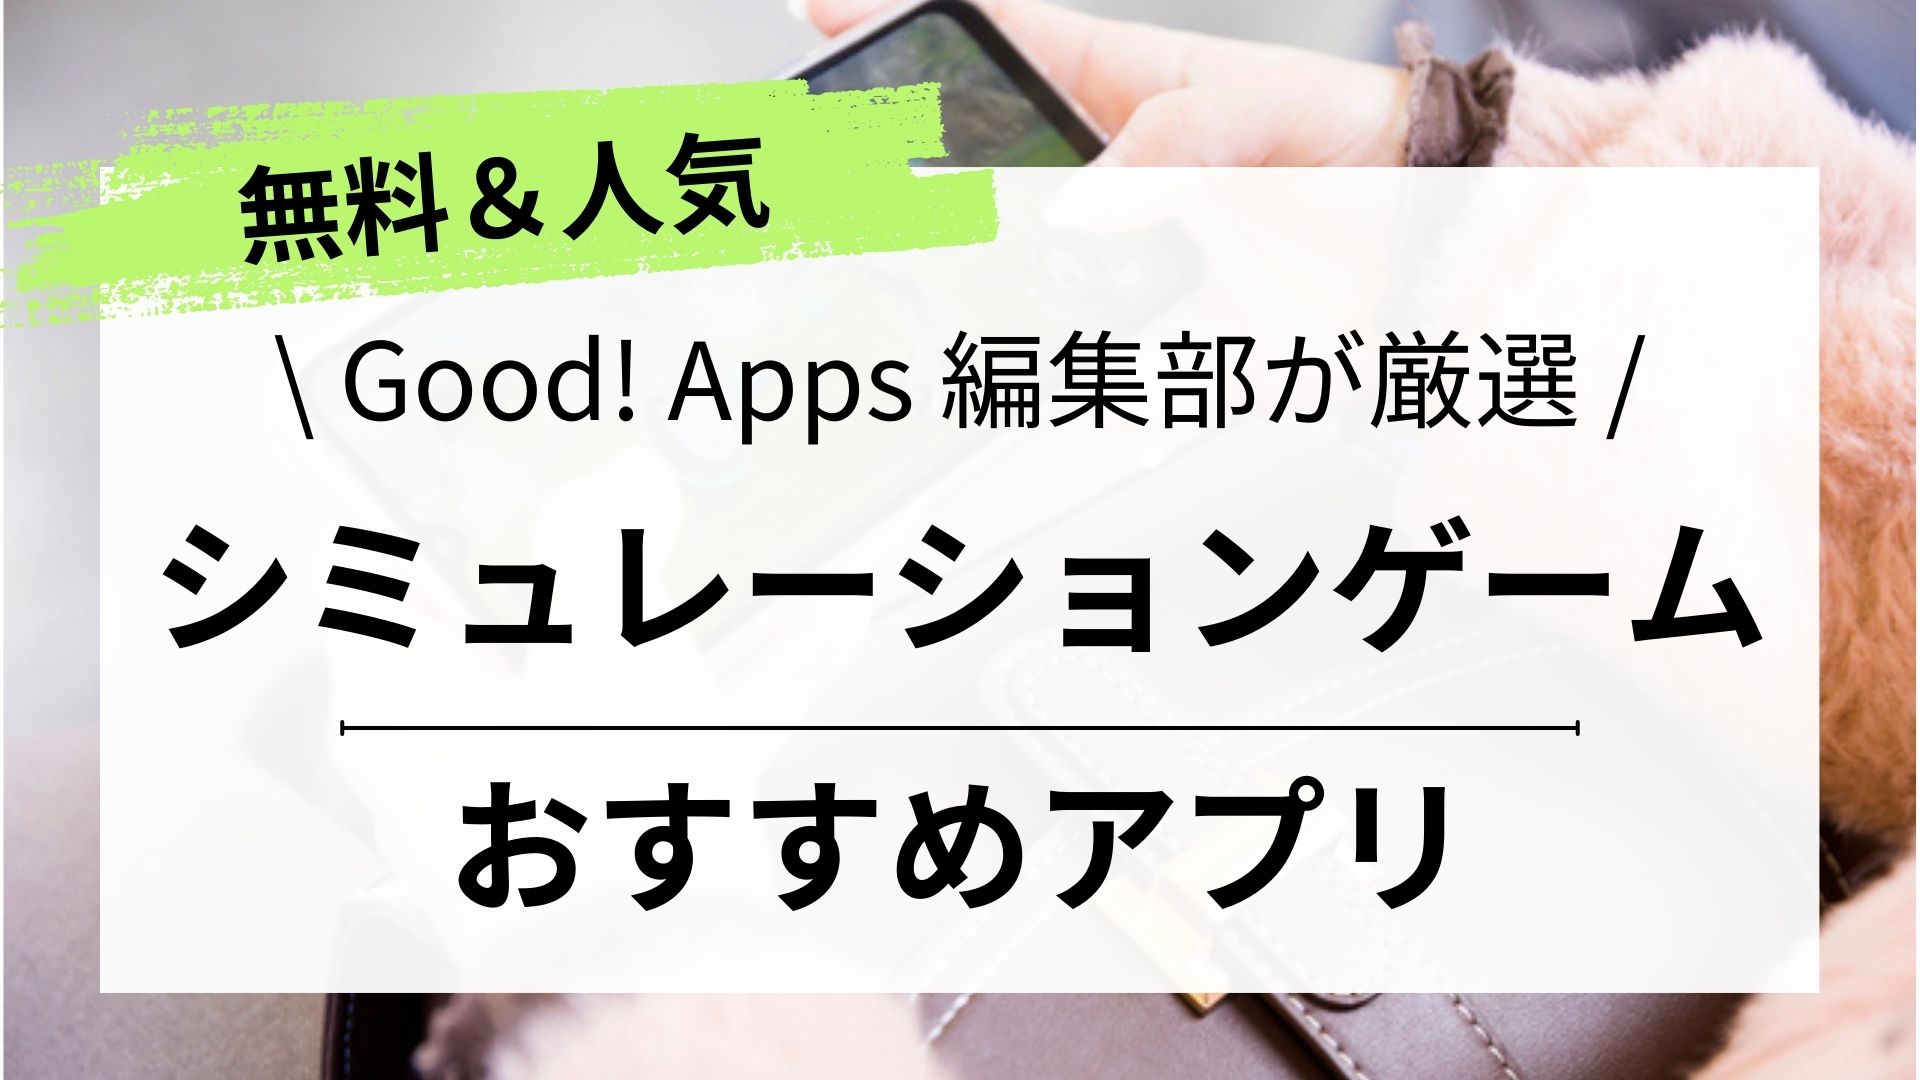 【無料ゲームアプリ】最新おすすめシミュレーションゲームアプリ一覧